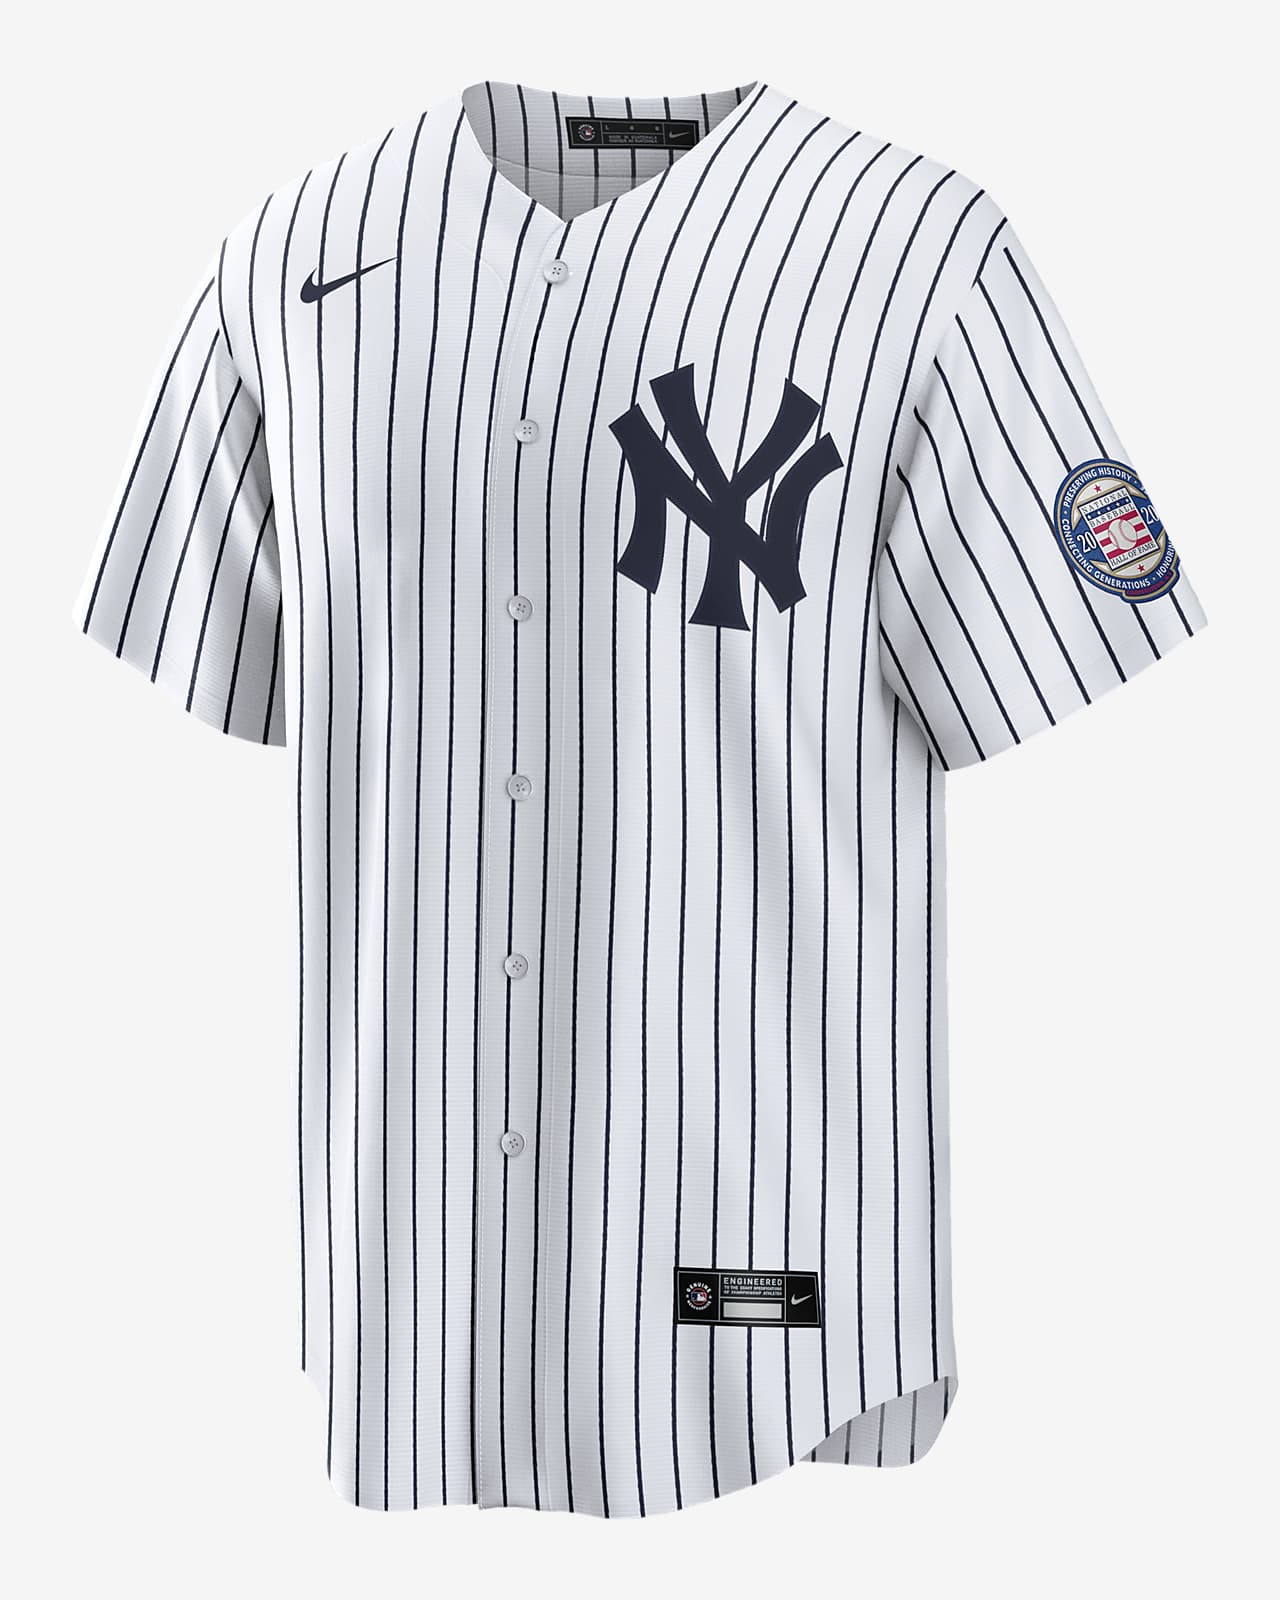 Gaan zege Portiek MLB New York Yankees (Derek Jeter) Men's Replica Baseball Jersey. Nike.com